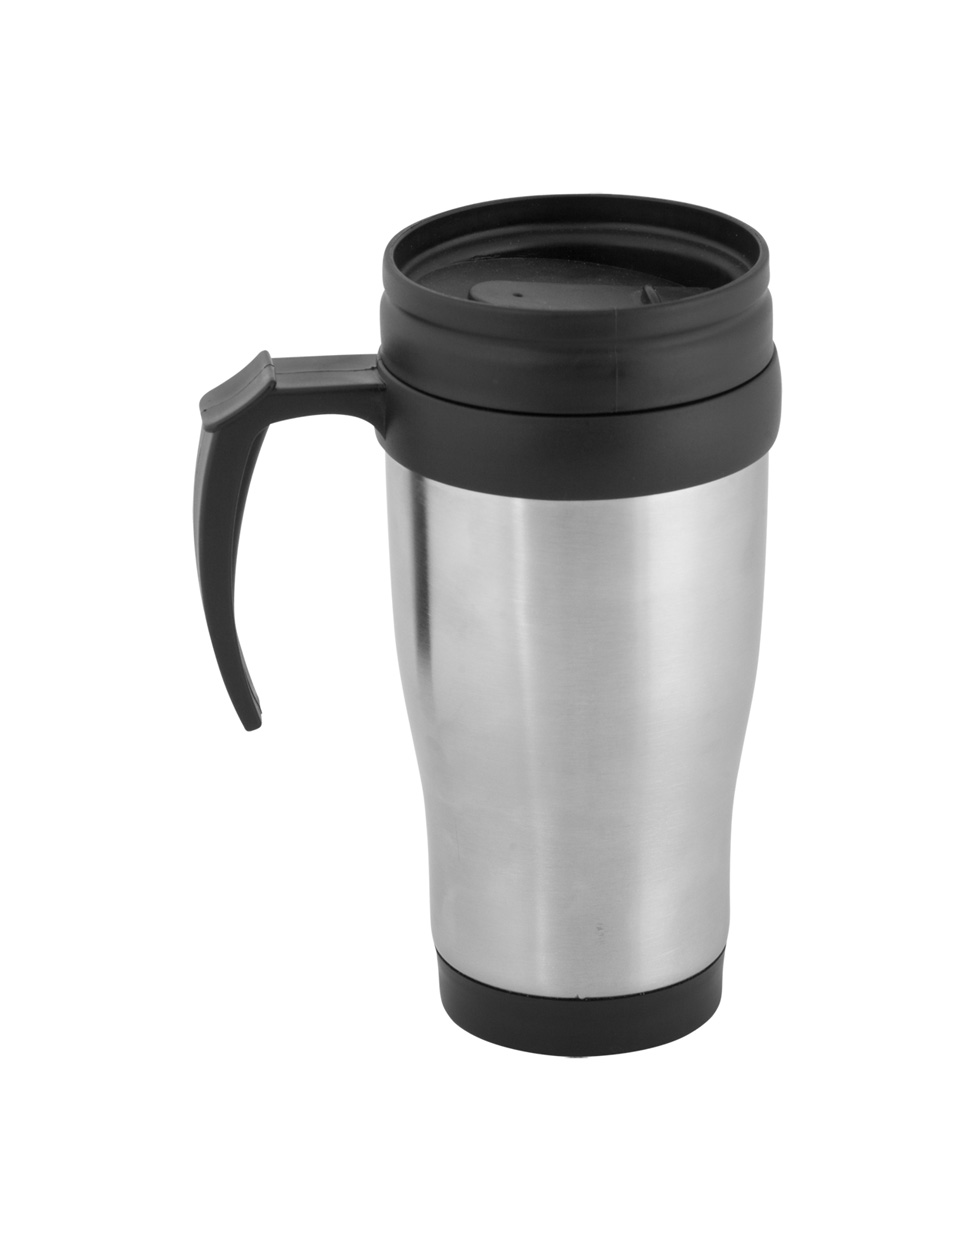 Metal thermo mug PATROL, 450 ml - silver / black